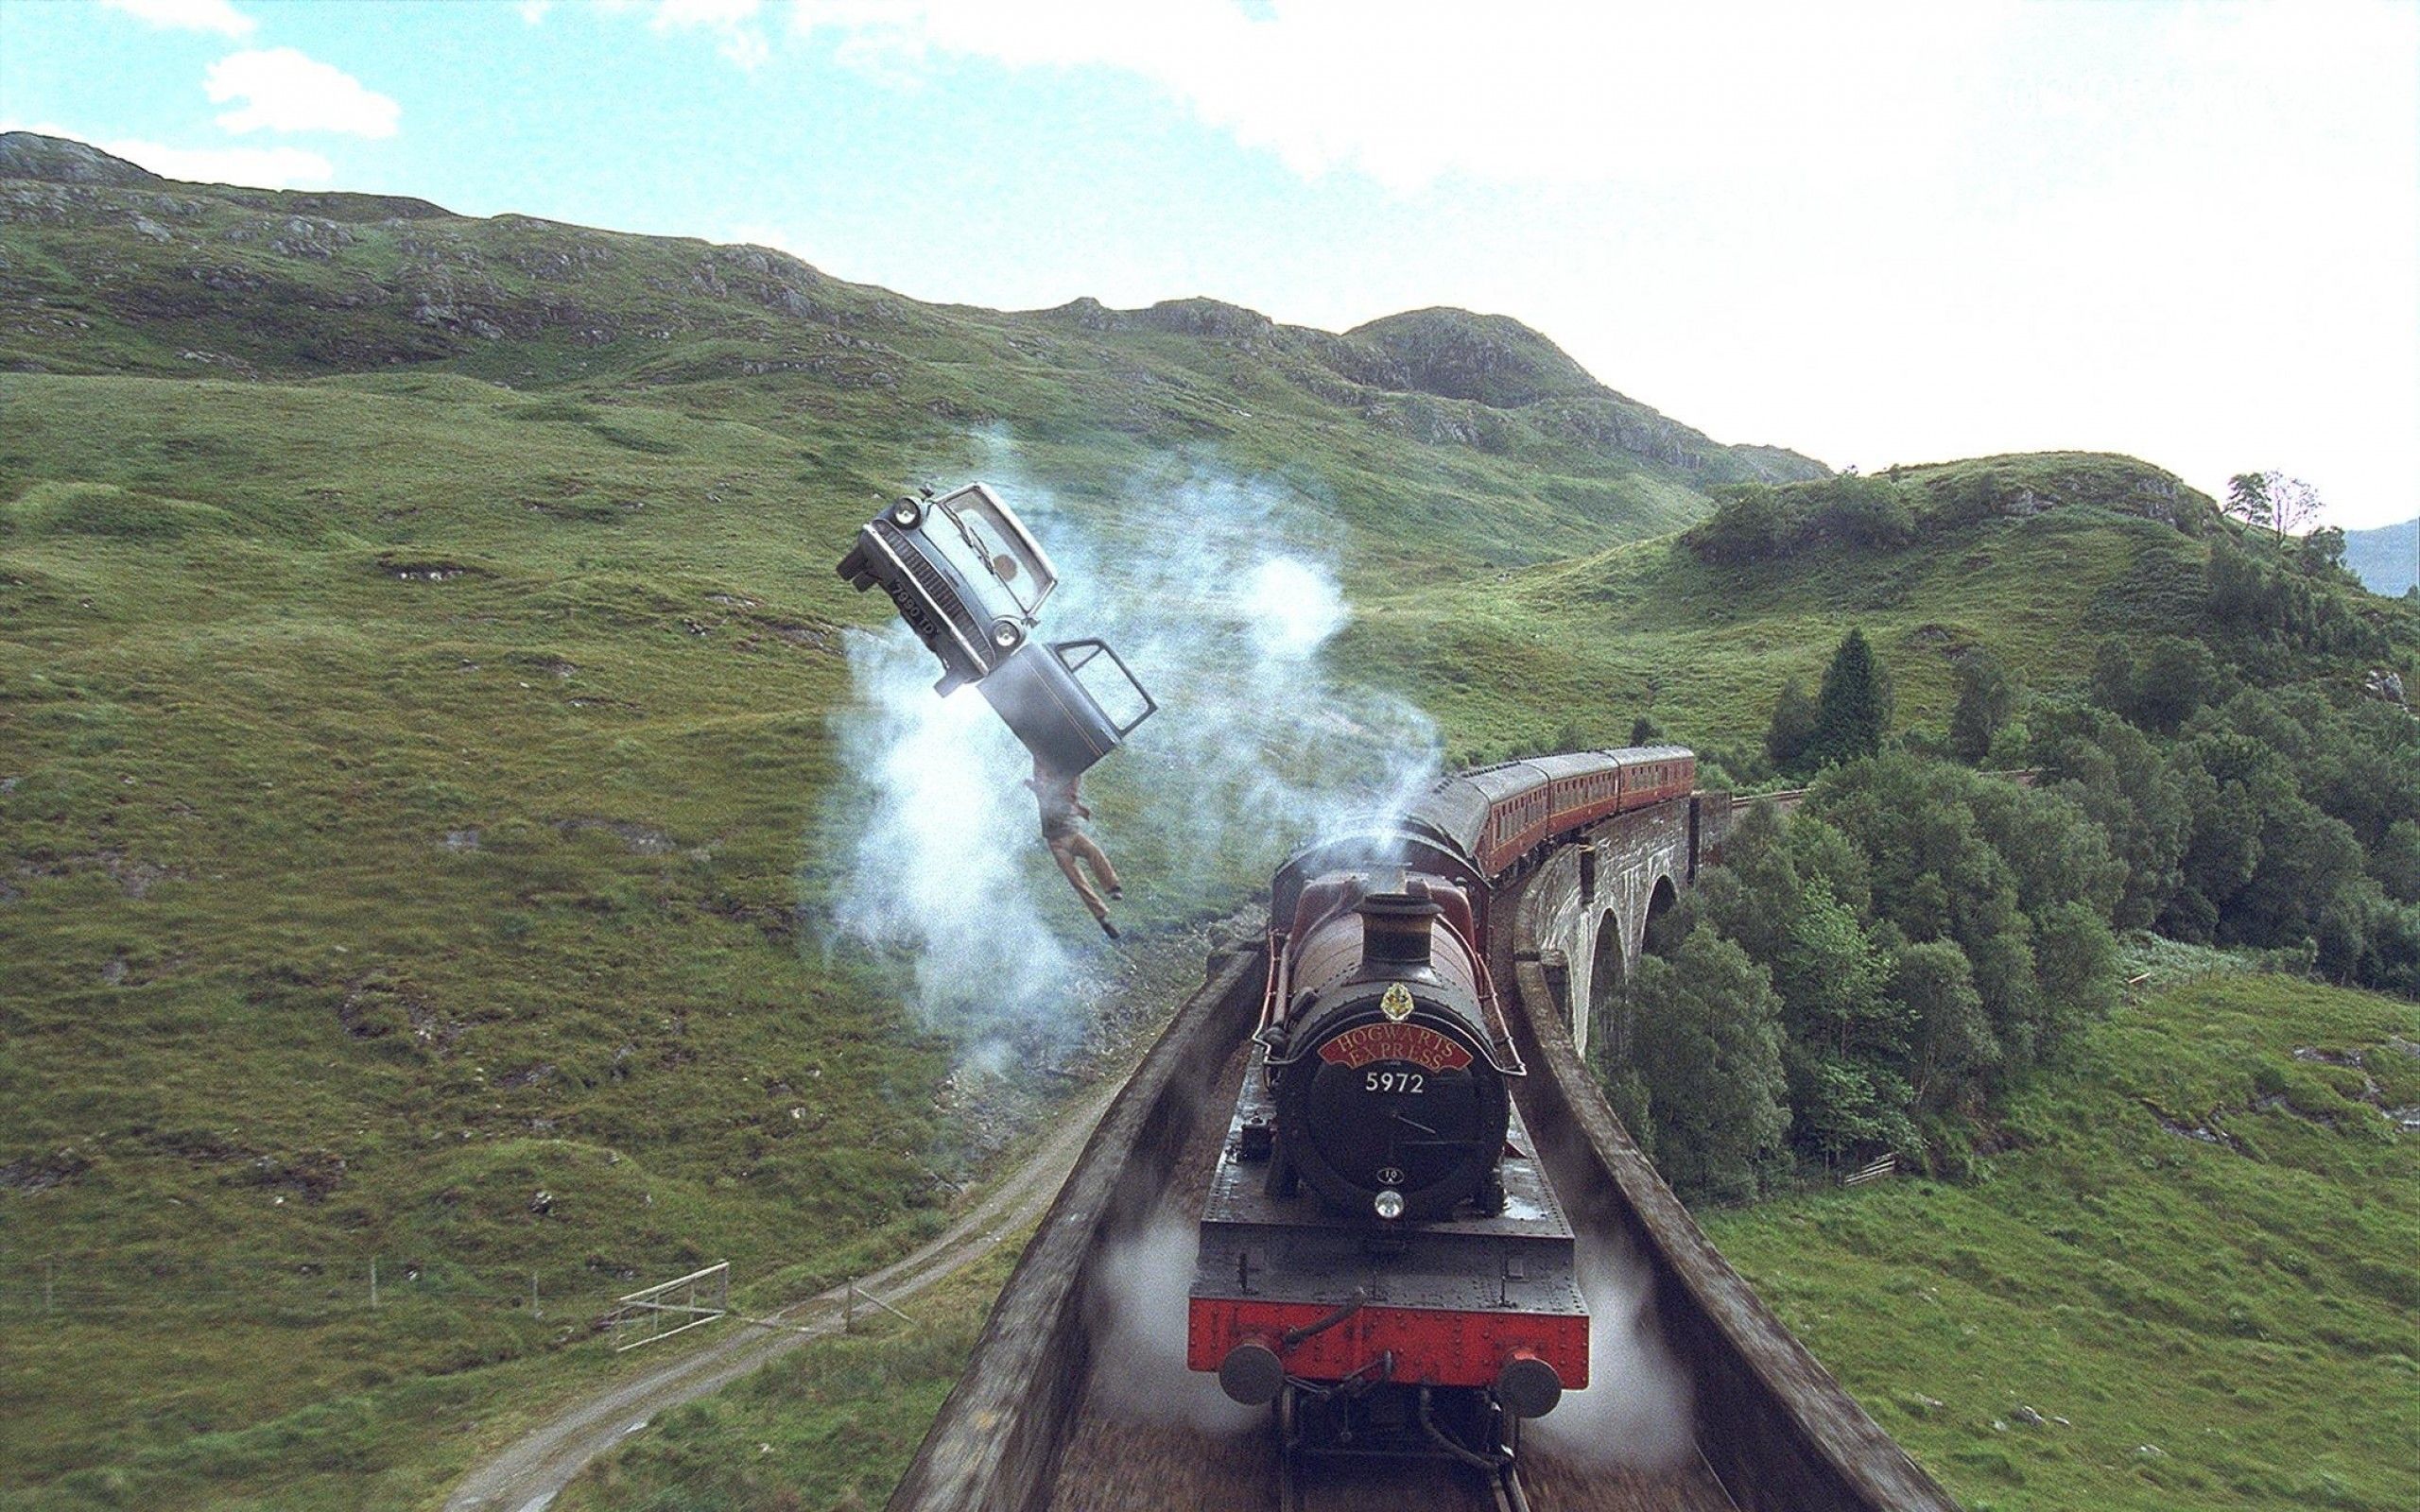 Hogwarts Express Background